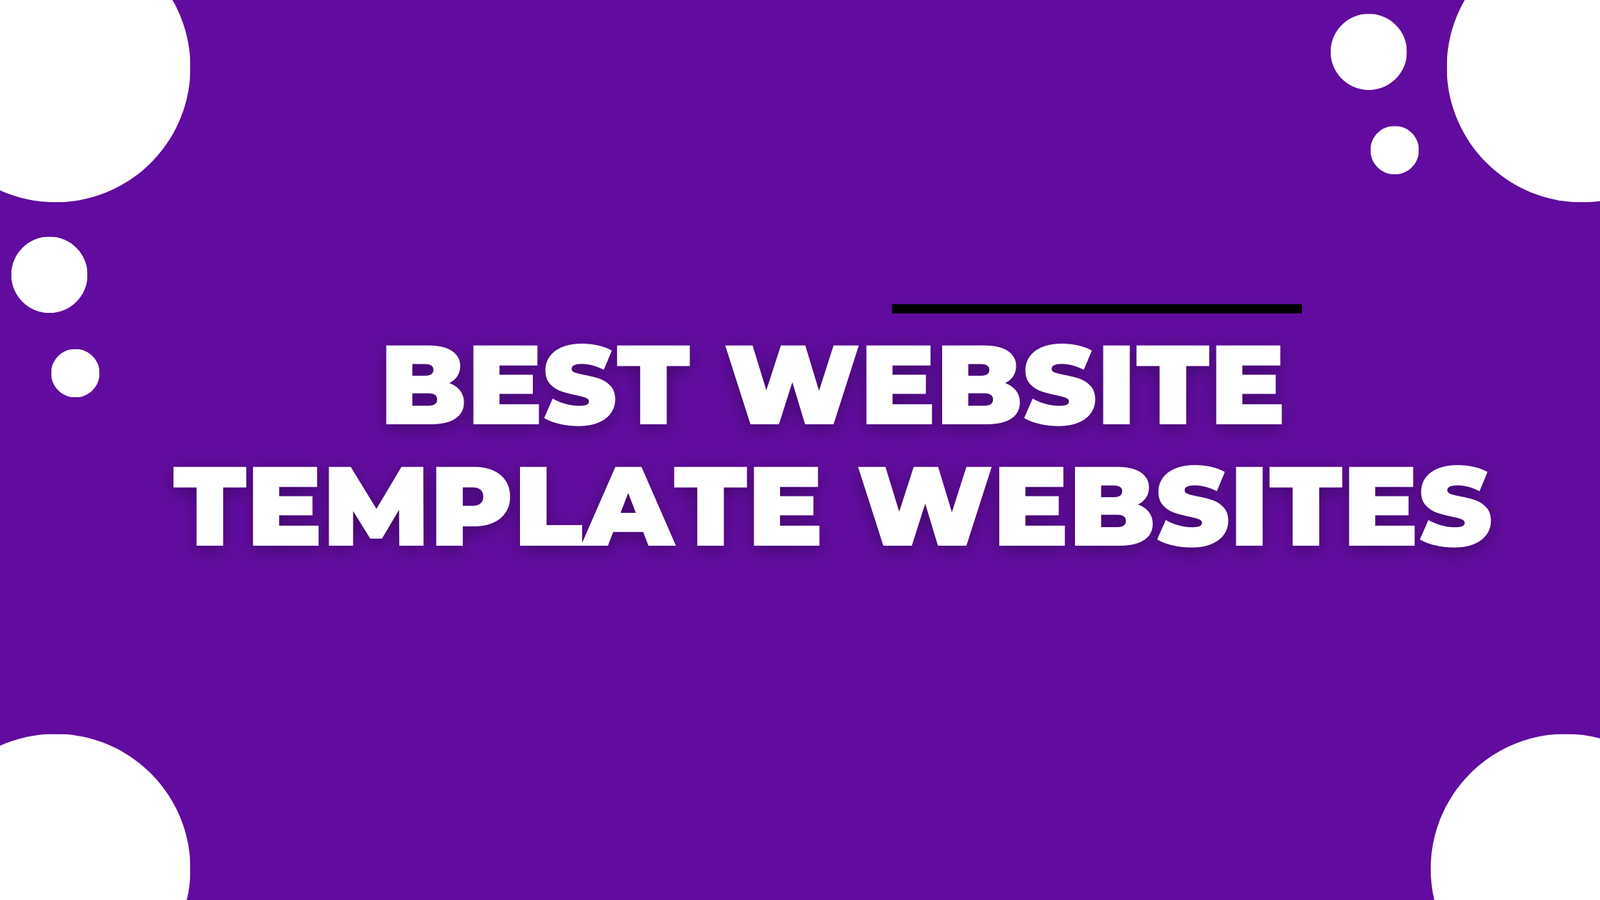 Best Website Template Websites